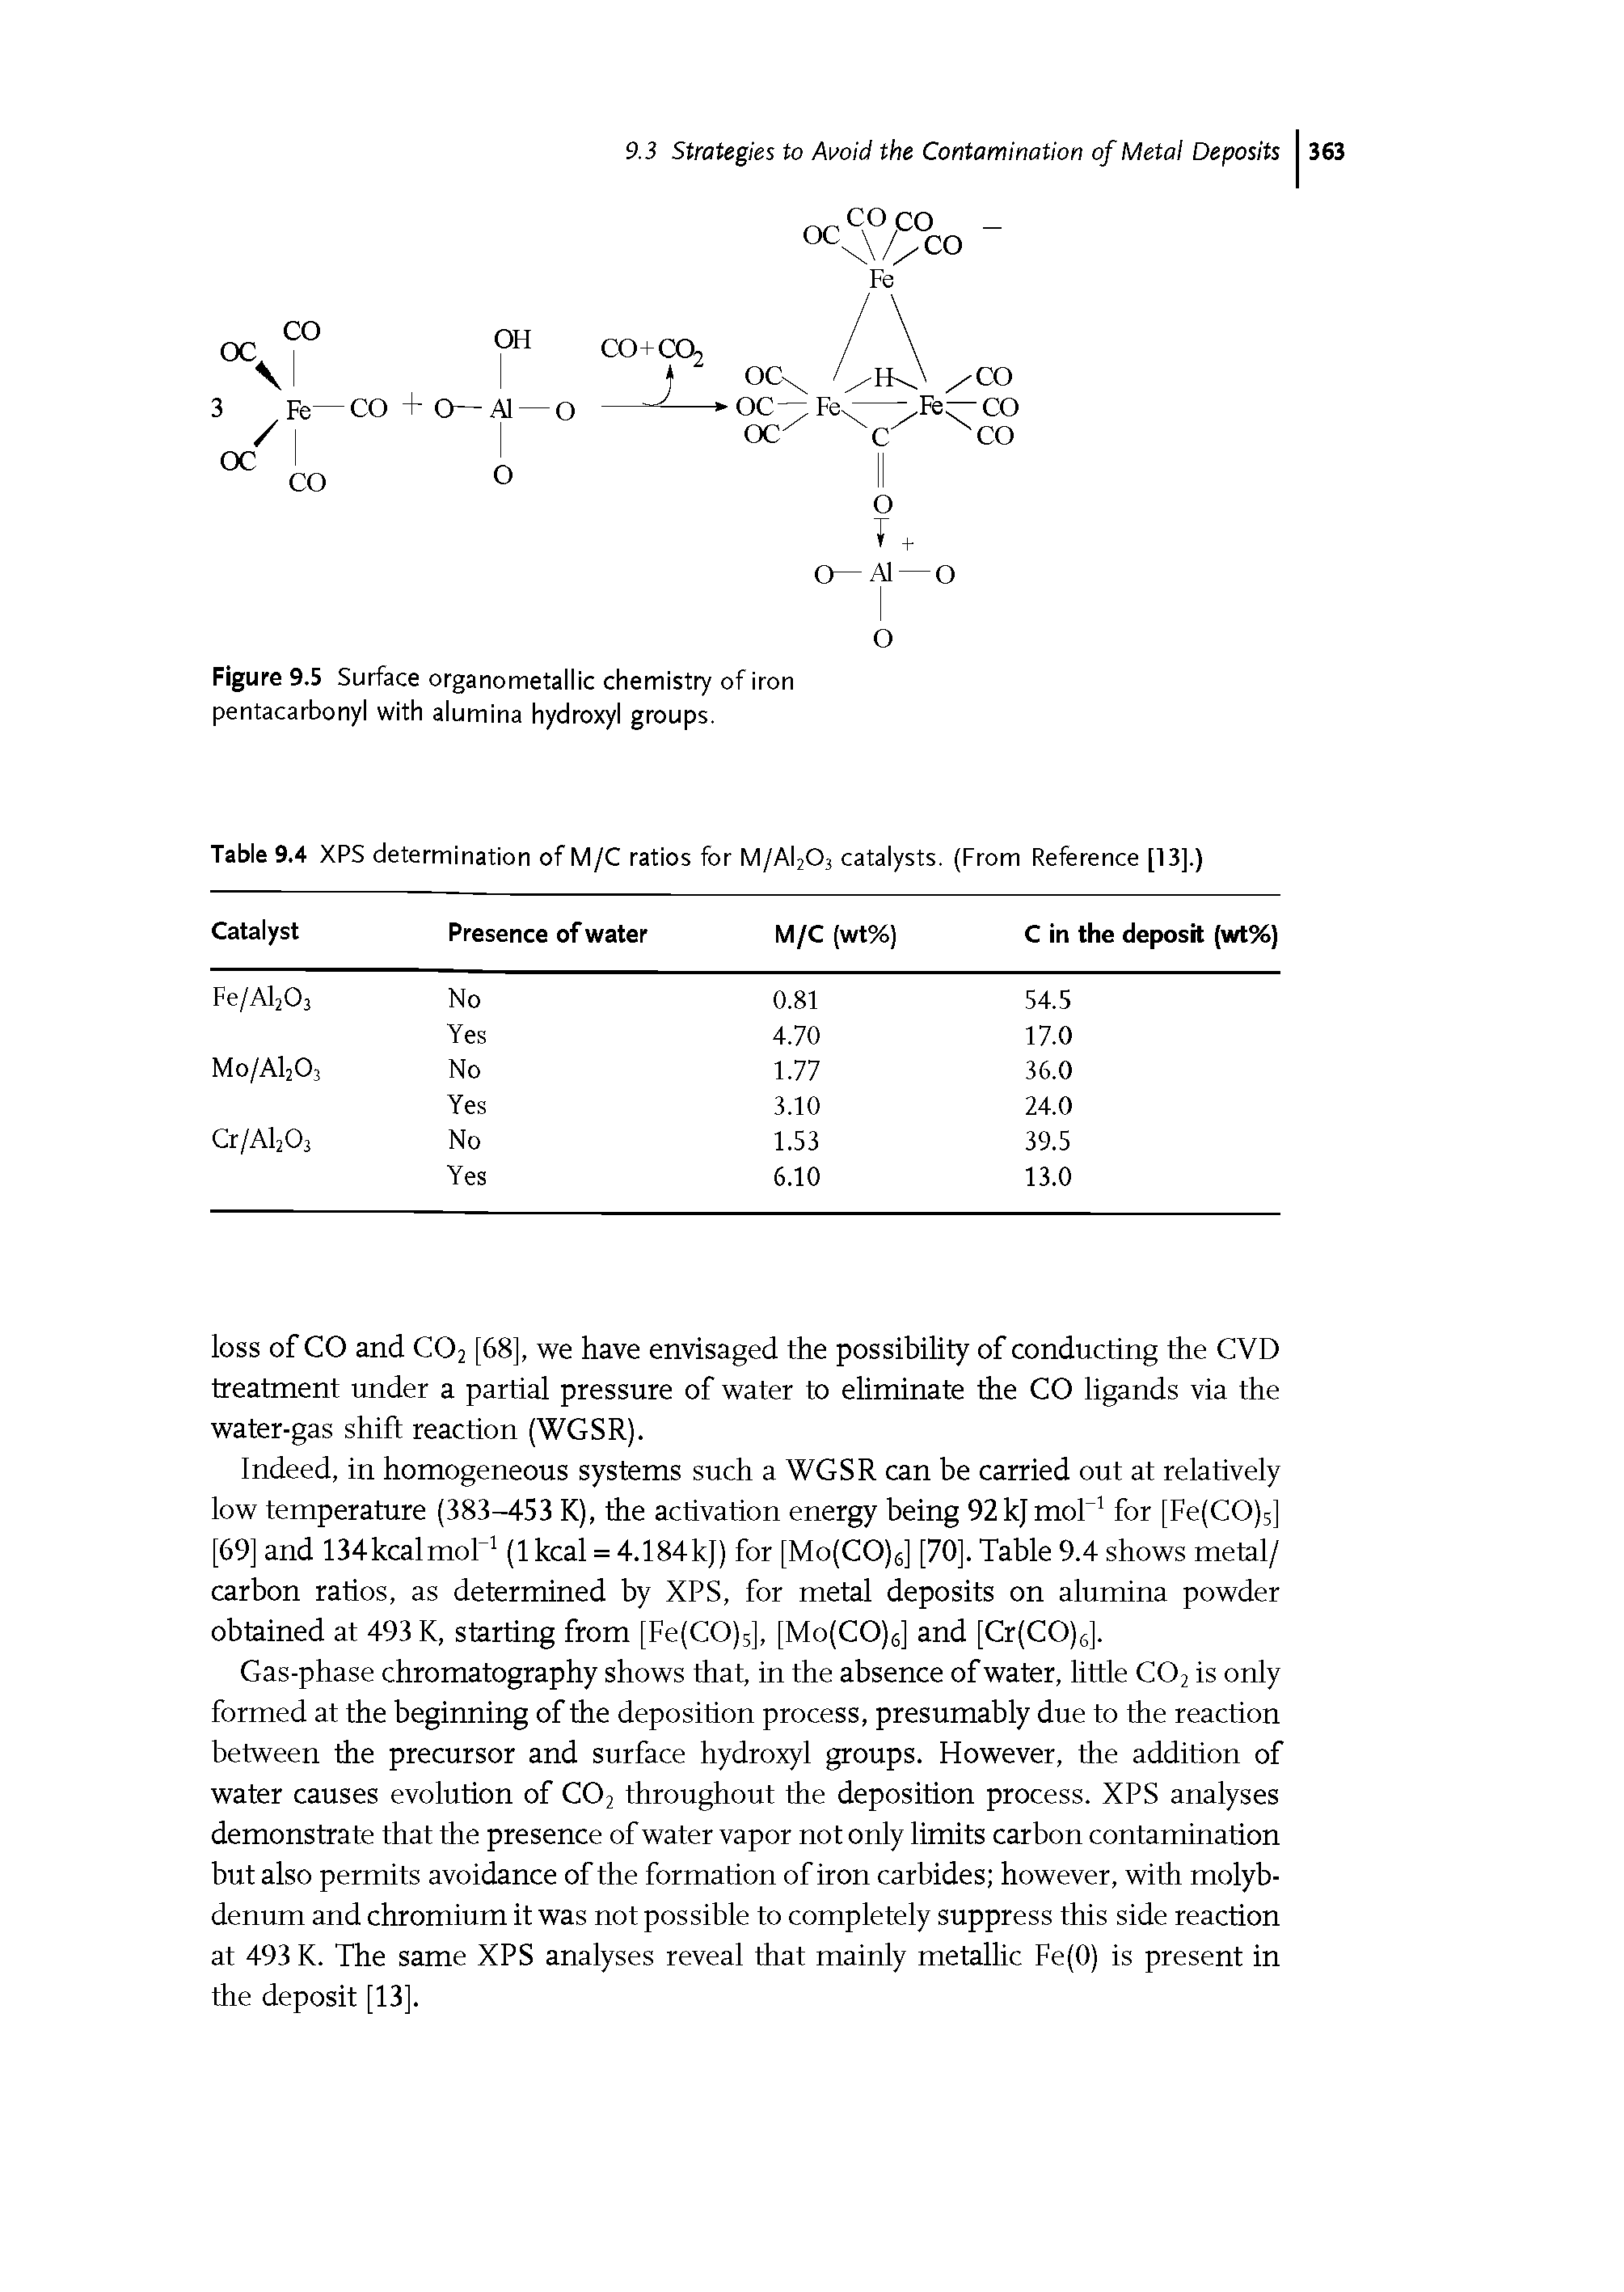 Figure 9.5 Surface organometallic chemistry of iron pentacarbonyl with alumina hydroxyl groups.